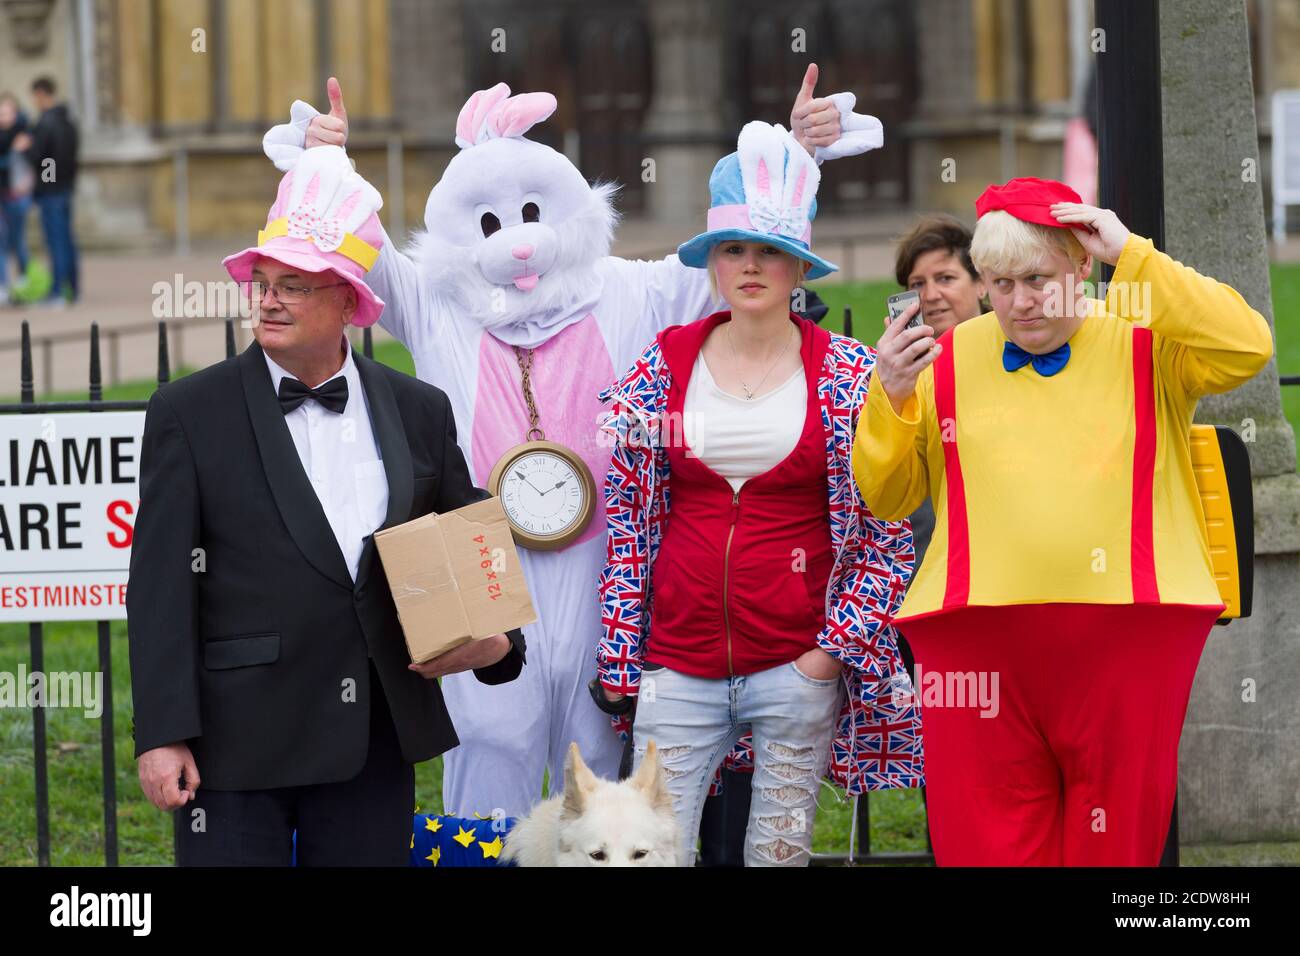 Les manifestants anti-Brexit s'habillent comme des personnages du livre Alice in Wonderland avec une robe Boris Johnson ressemblant à celle de Tweedledum, devant les chambres du Parlement, pour protester contre l'annonce d'aujourd'hui de l'article 50 START, le début officiel du processus de 2 ans pour que la Grande-Bretagne quitte l'Union européenne. Chambres du Parlement, Londres, Royaume-Uni. 29 mars 2017 Banque D'Images